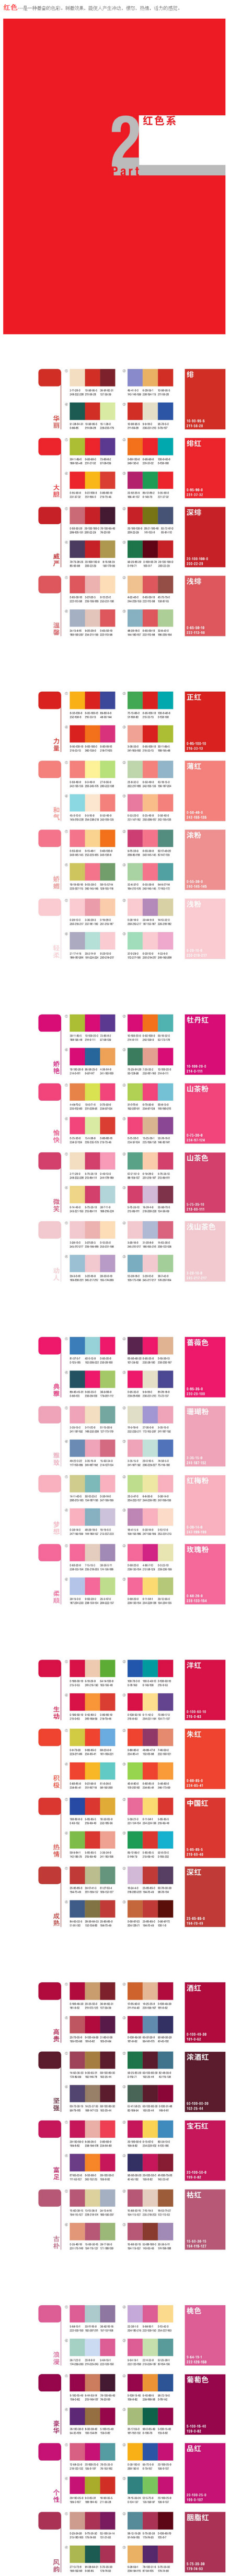 7種色彩設計方案 三聯